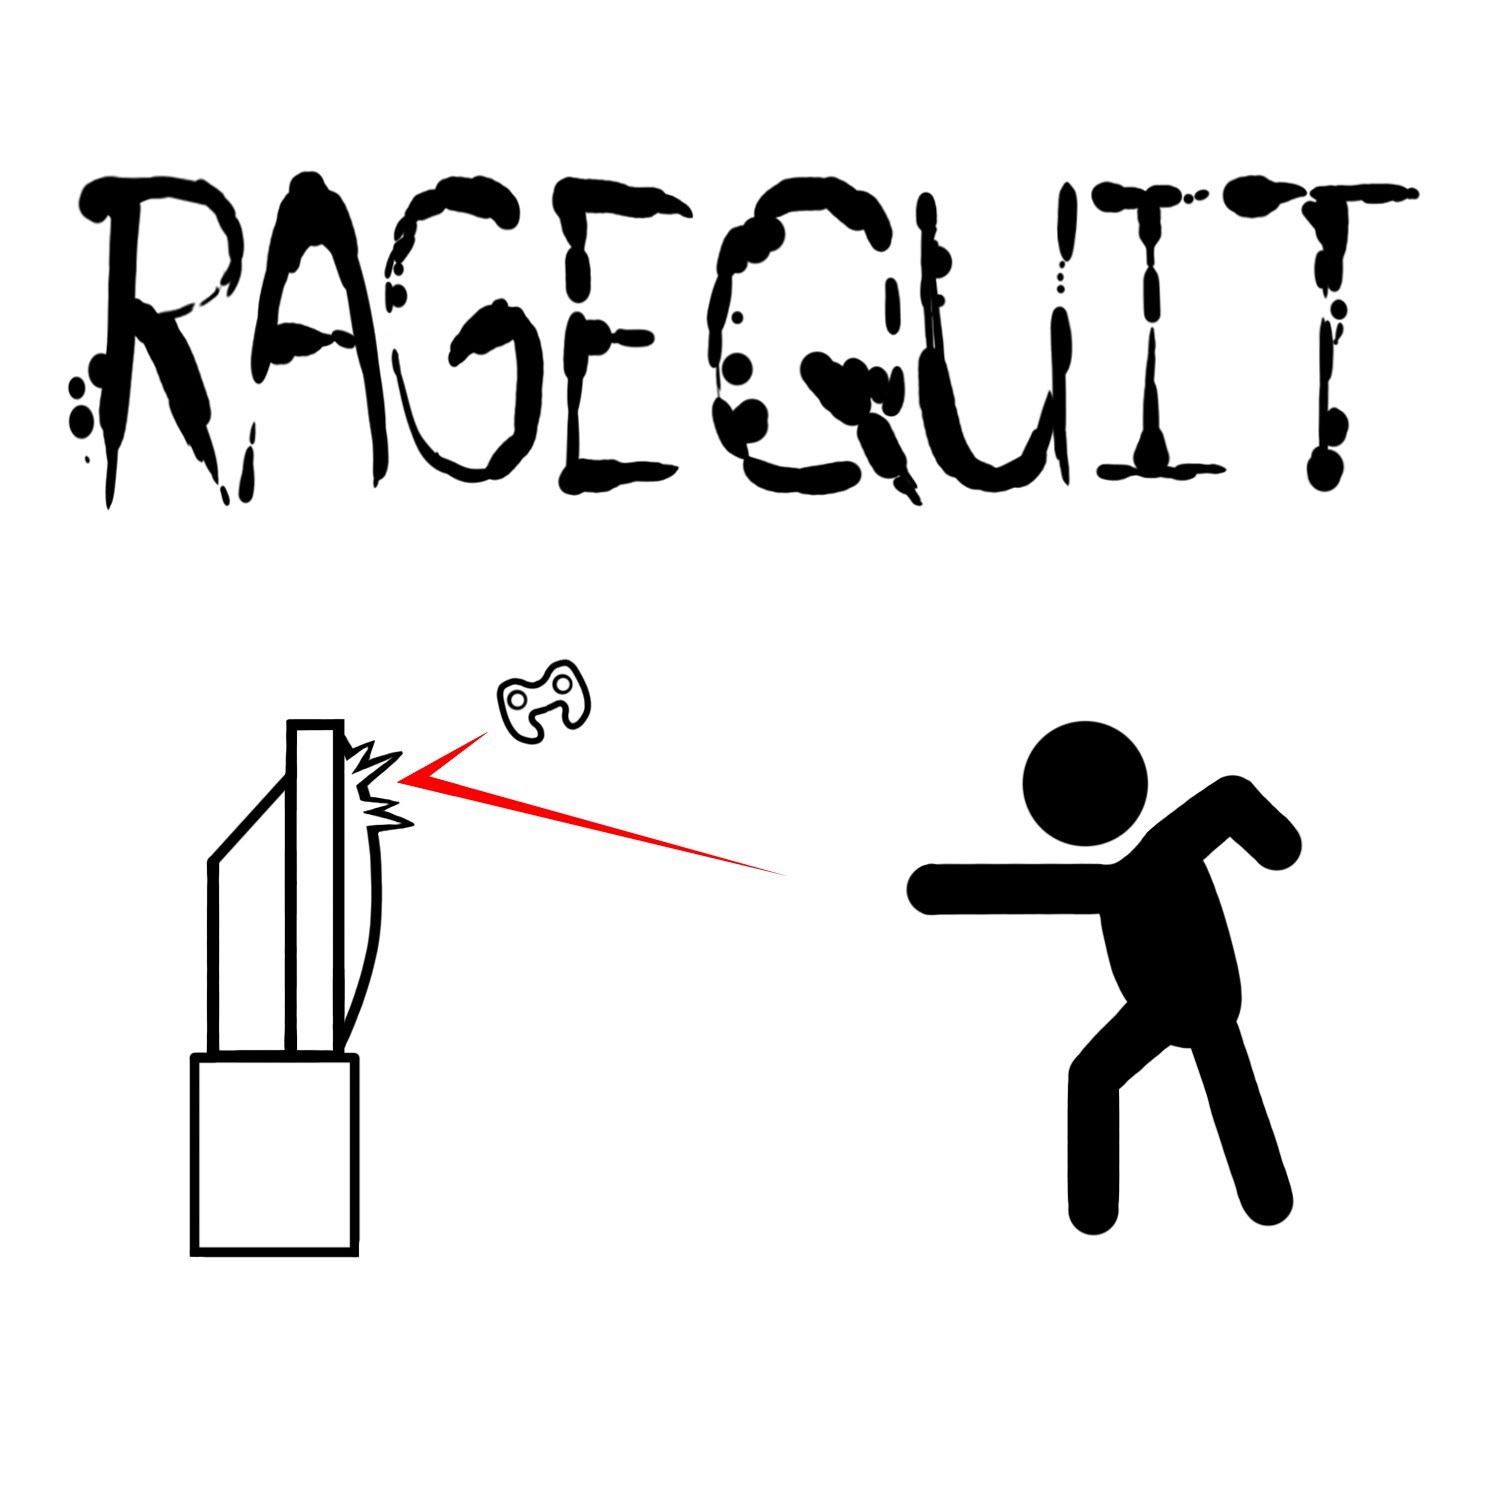 Rage quit. - Imgflip